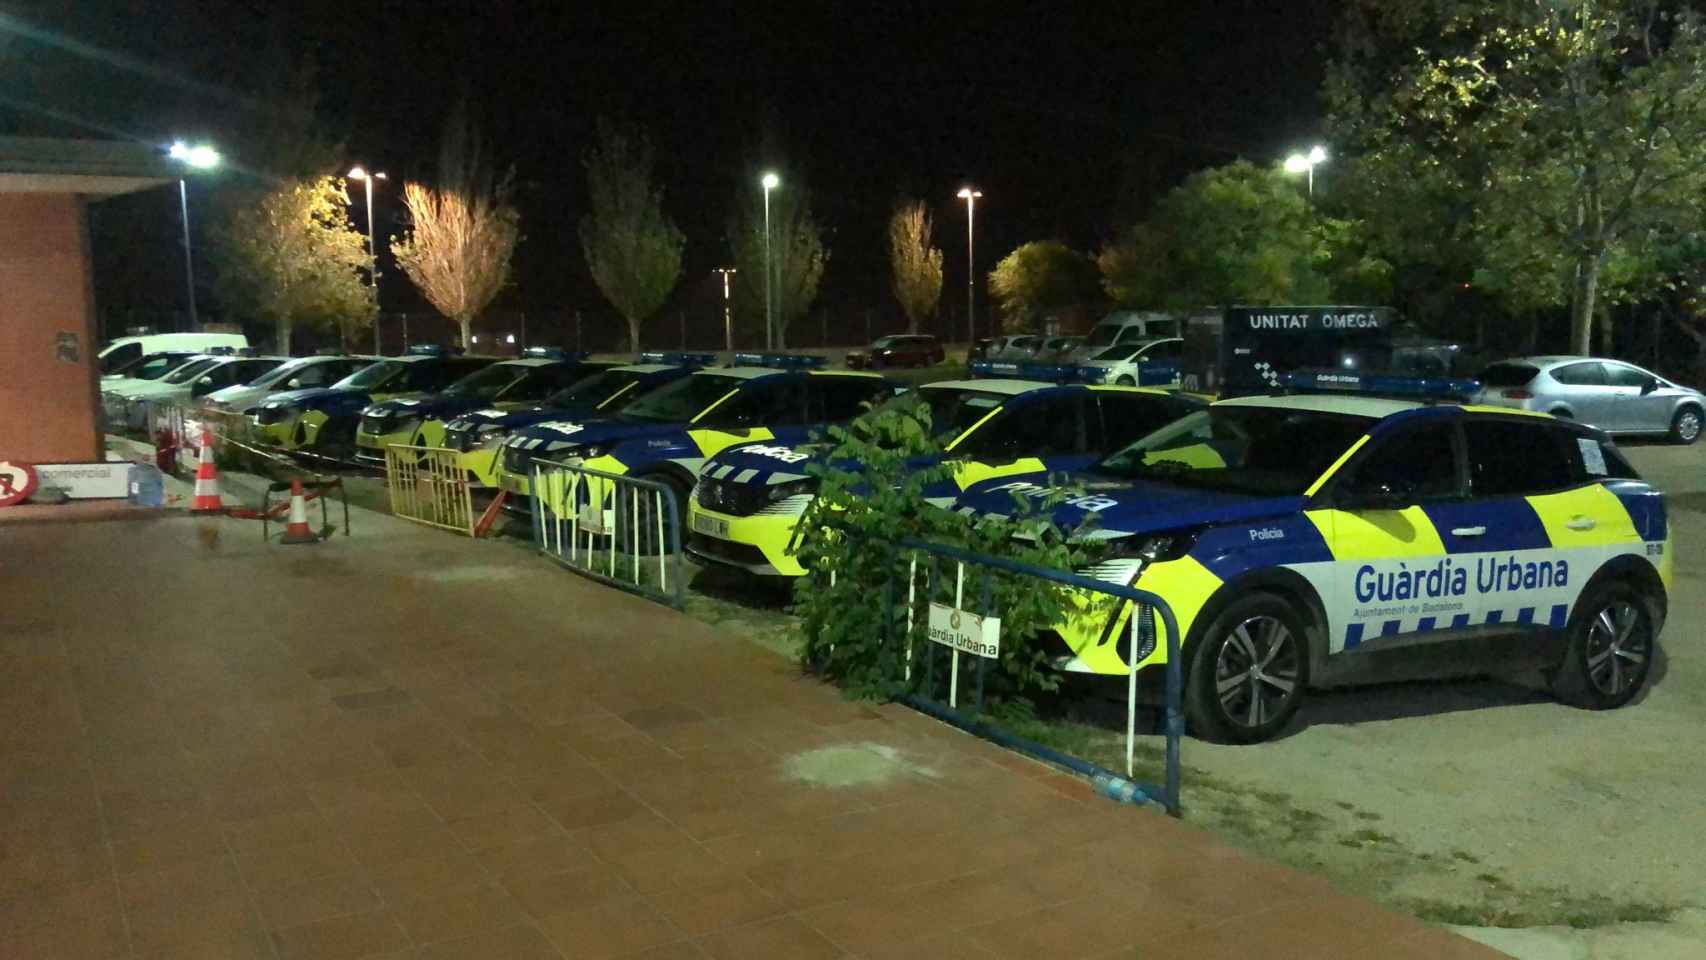 La flota de coches de la Guardia Urbana de Badalona